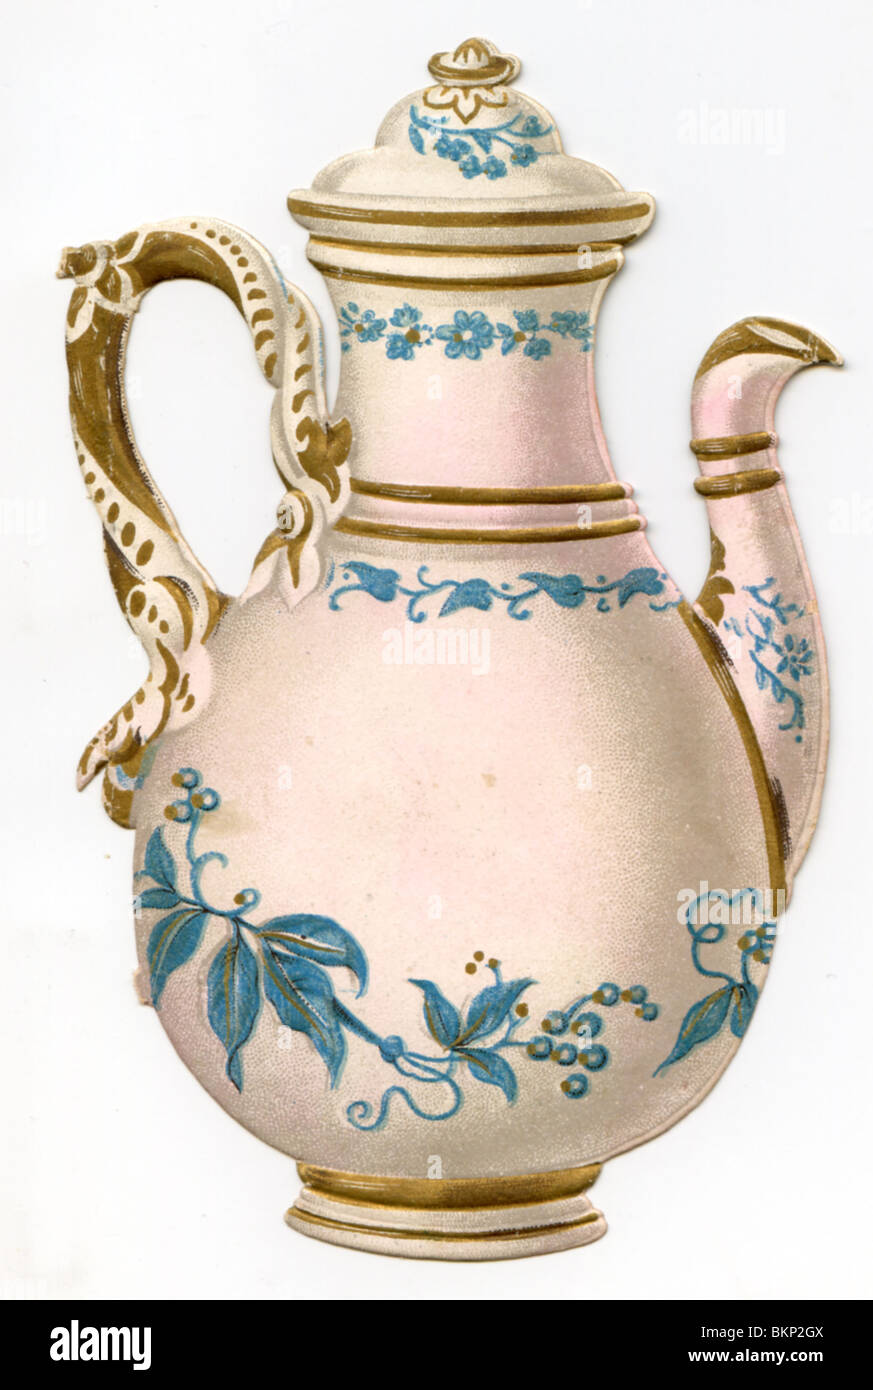 Weiß und blau dekorative Teekanne mit Golddetails Stockfoto